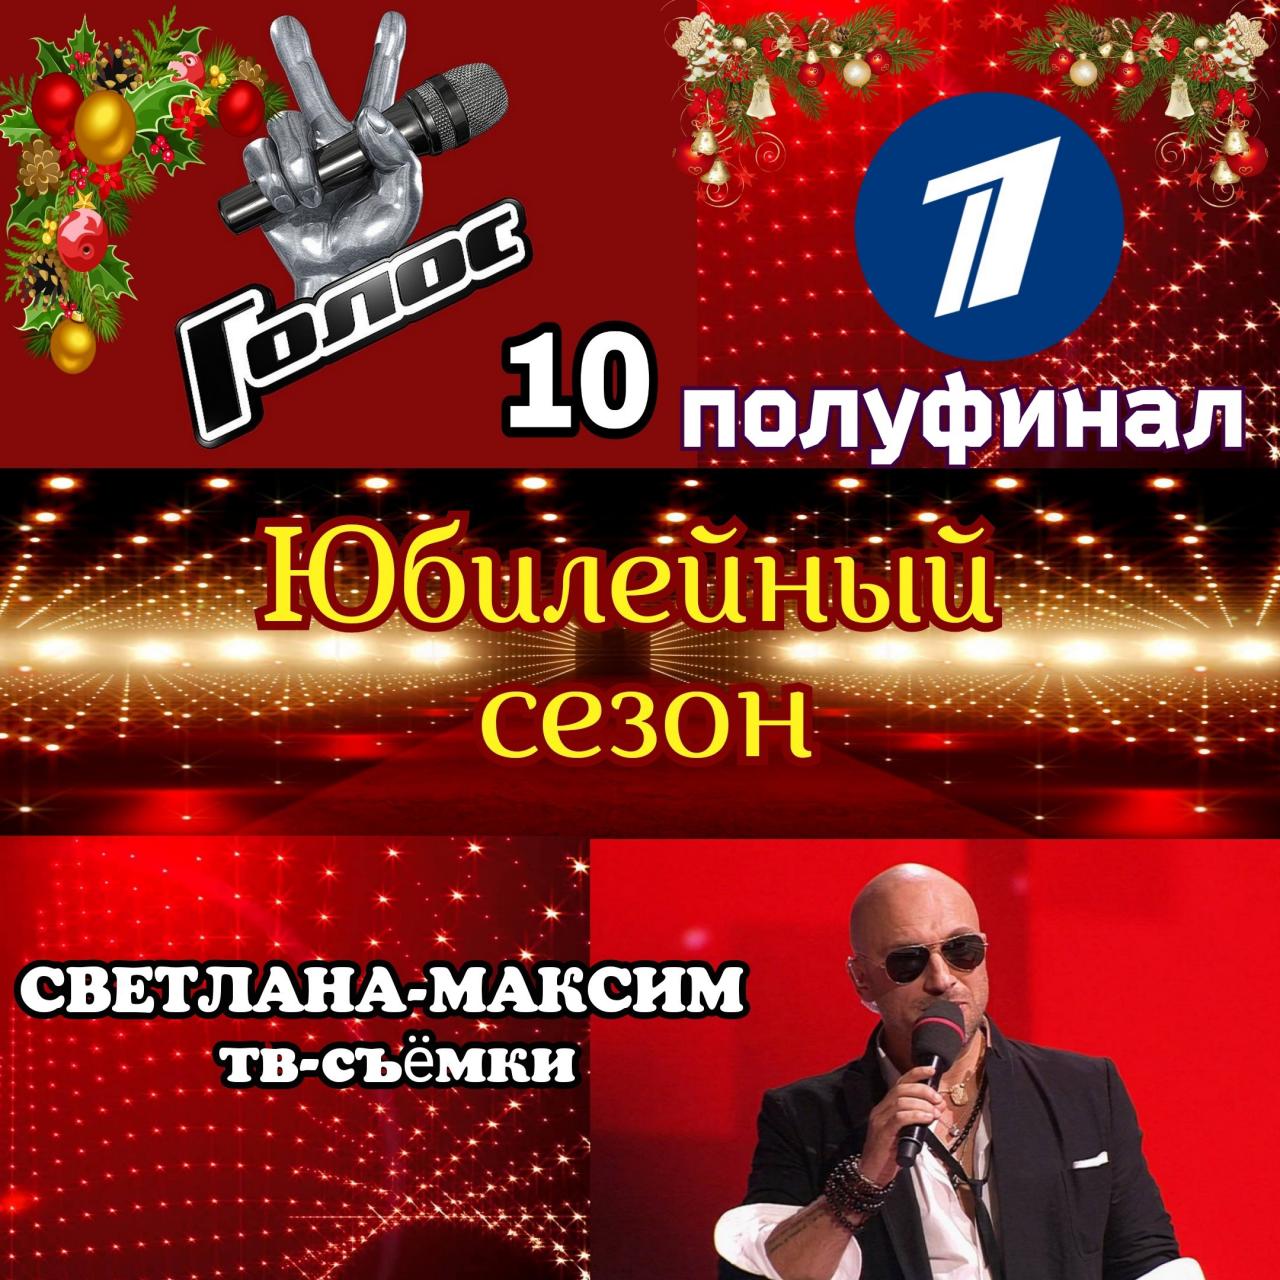 24 декабря музыкальное супер-шоу "ГОЛОС 10". Полуфинал. Прямой эфир.